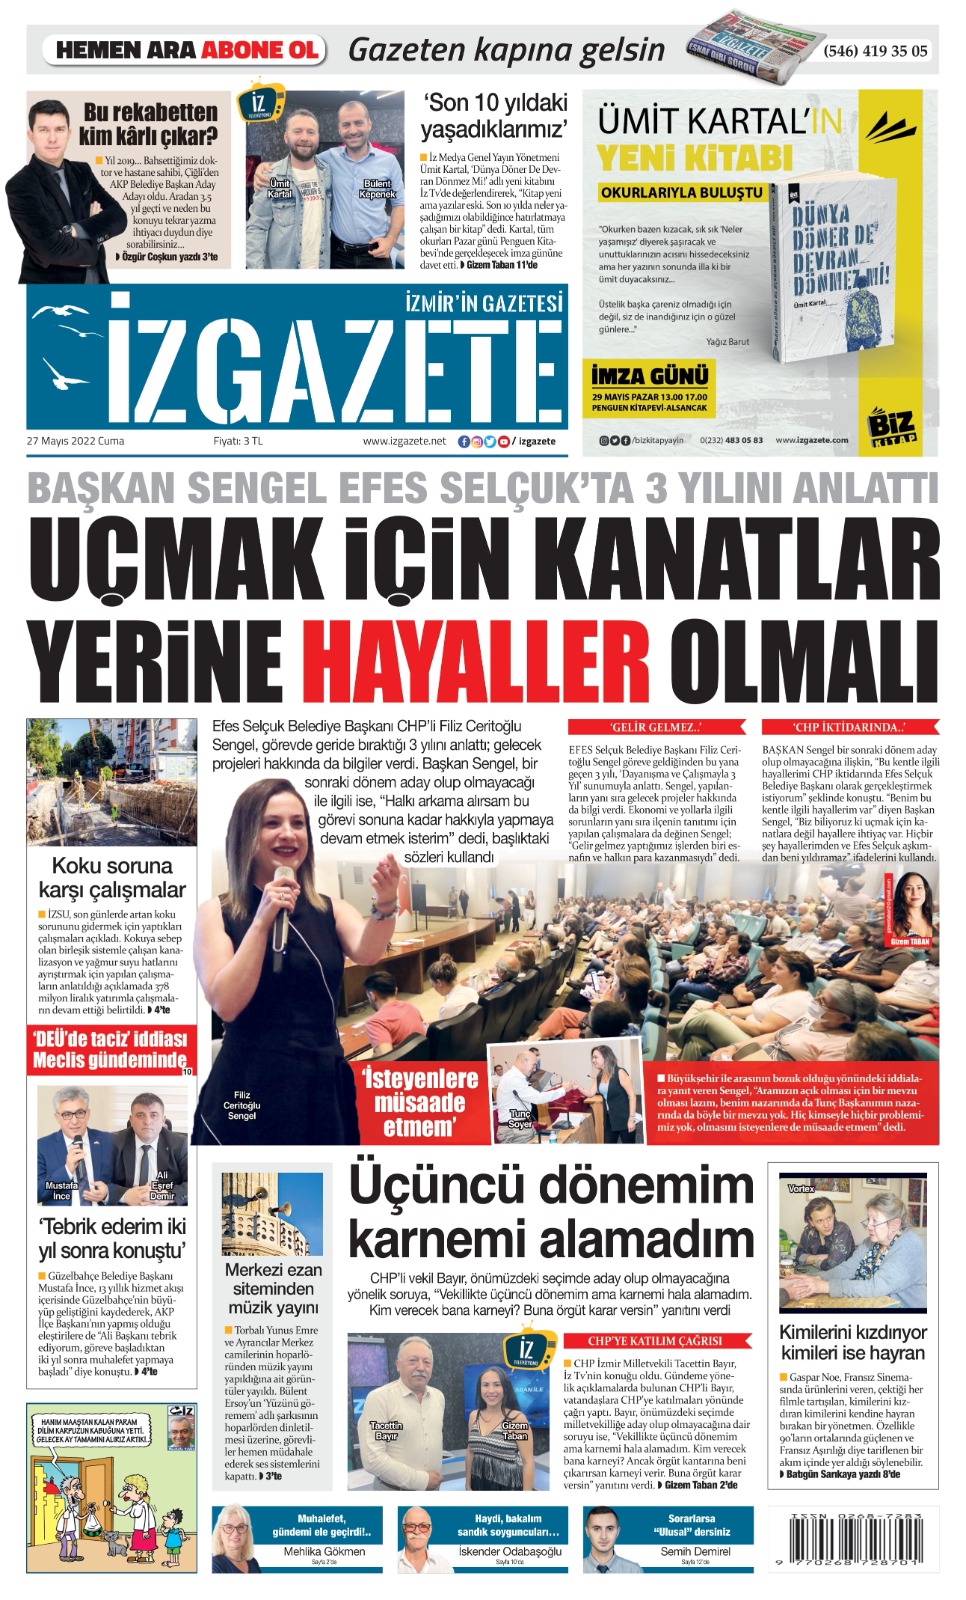 İz Gazete - İzmir'in Gazetesi - 27.05.2022 Manşeti